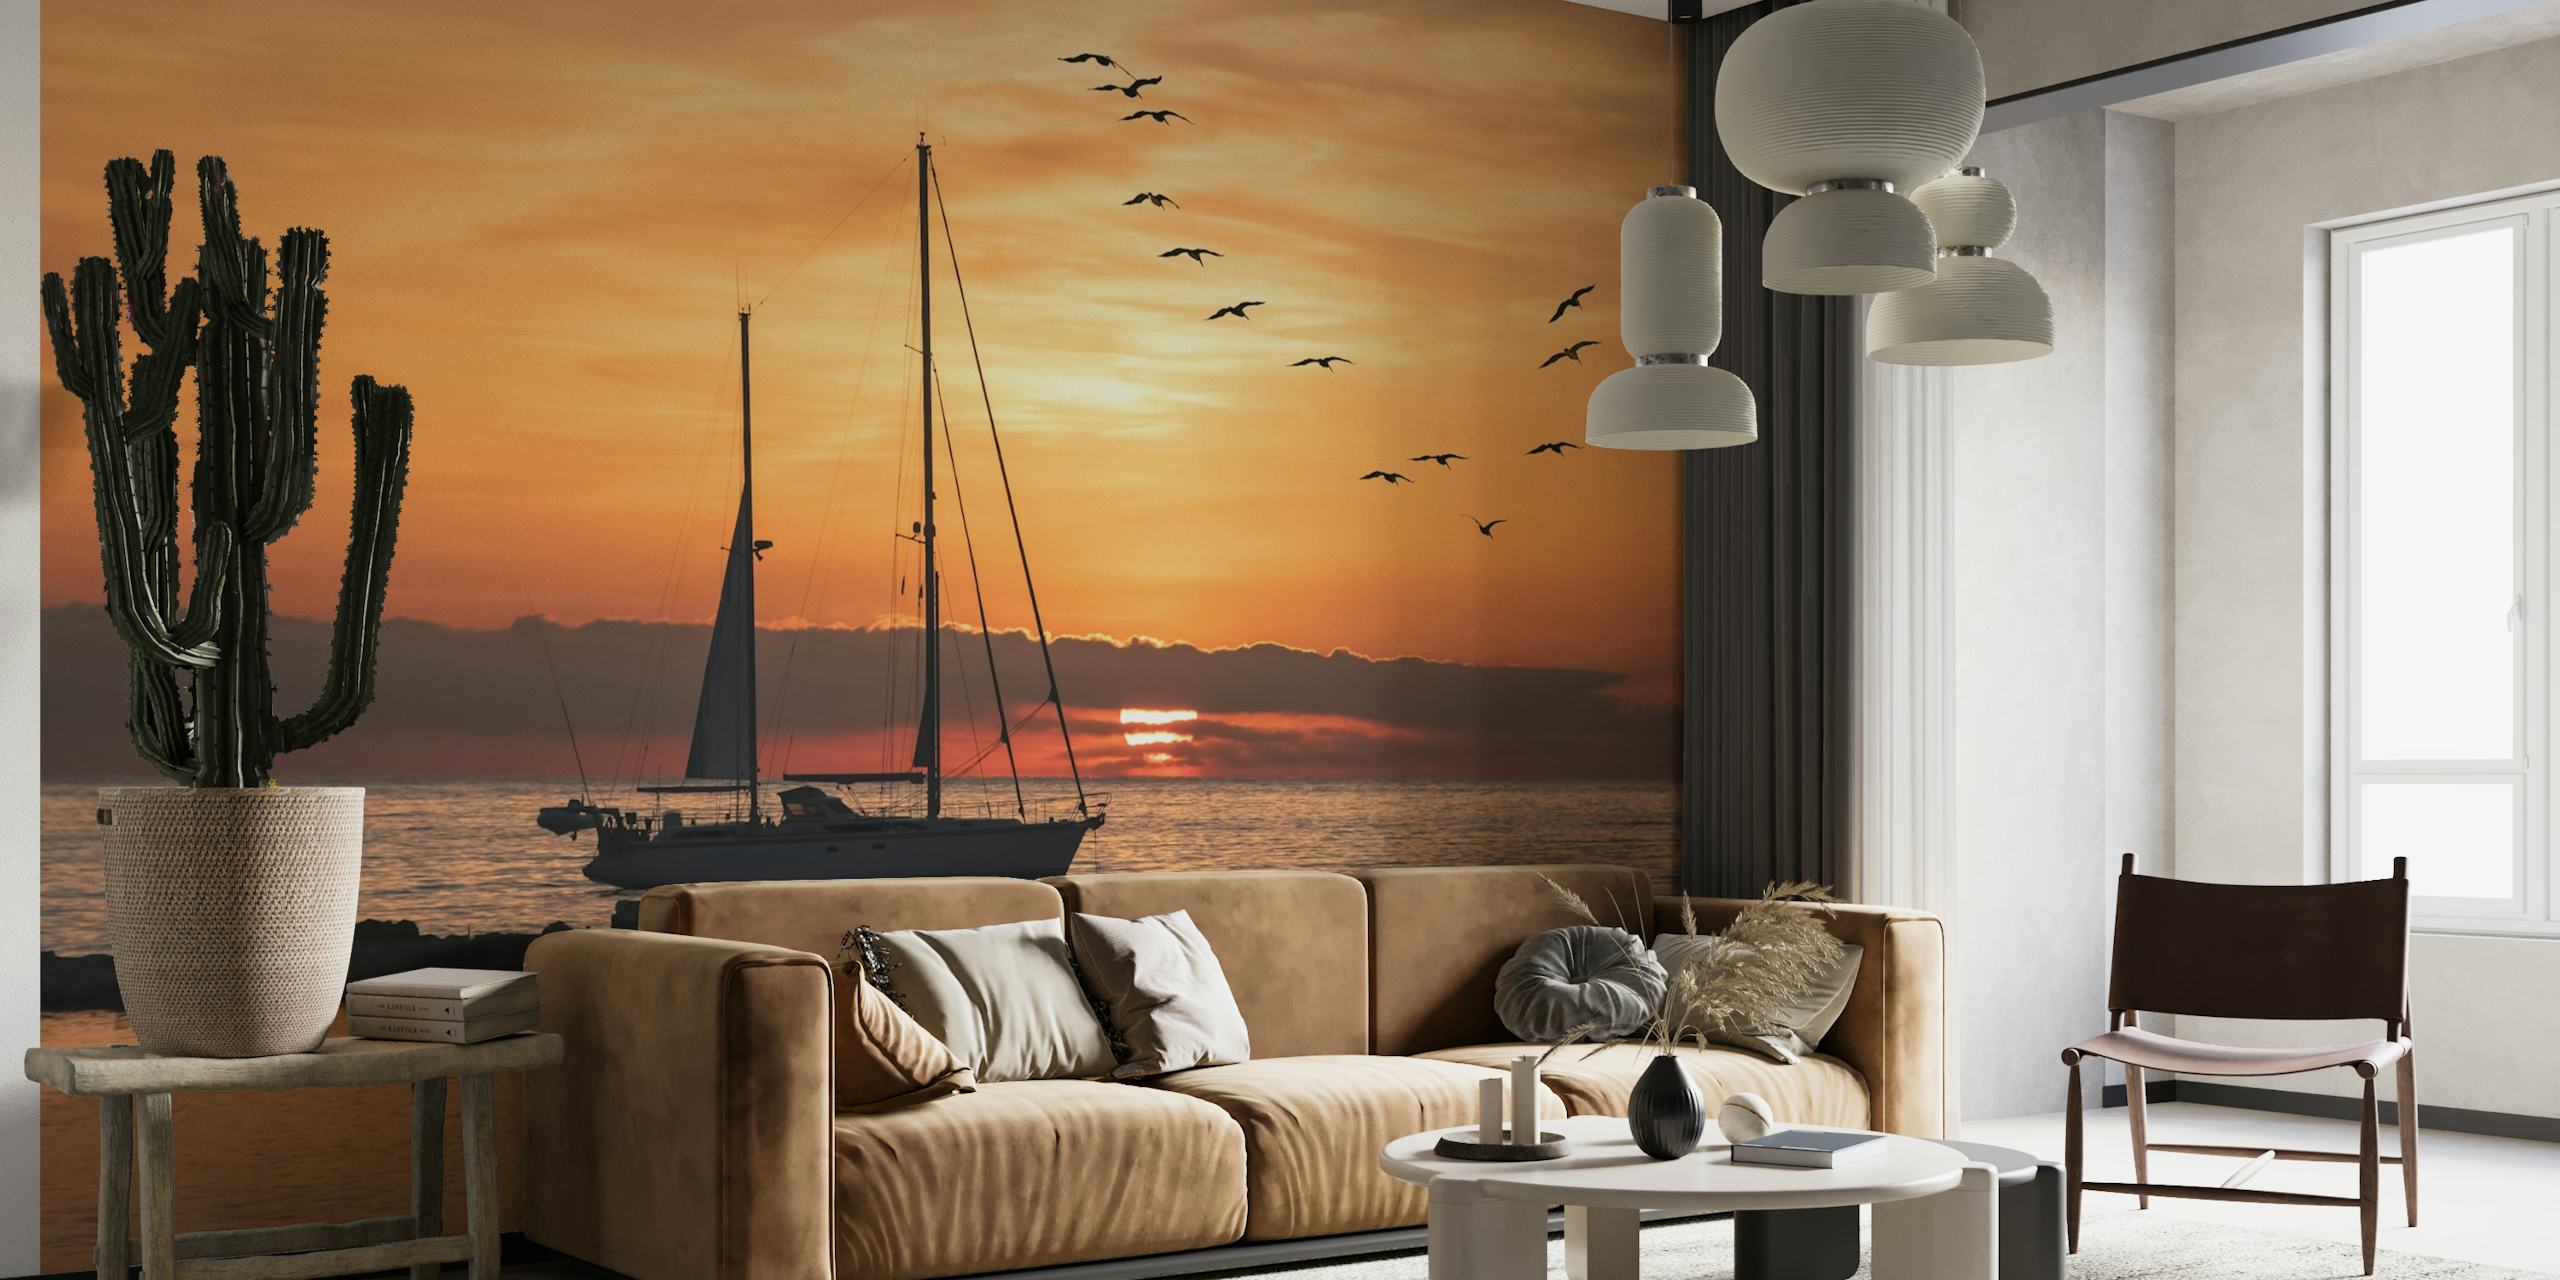 Zeilbootsilhouet tegen een zonsondergang op de achtergrond met vliegende vogels over de zeemuurschildering